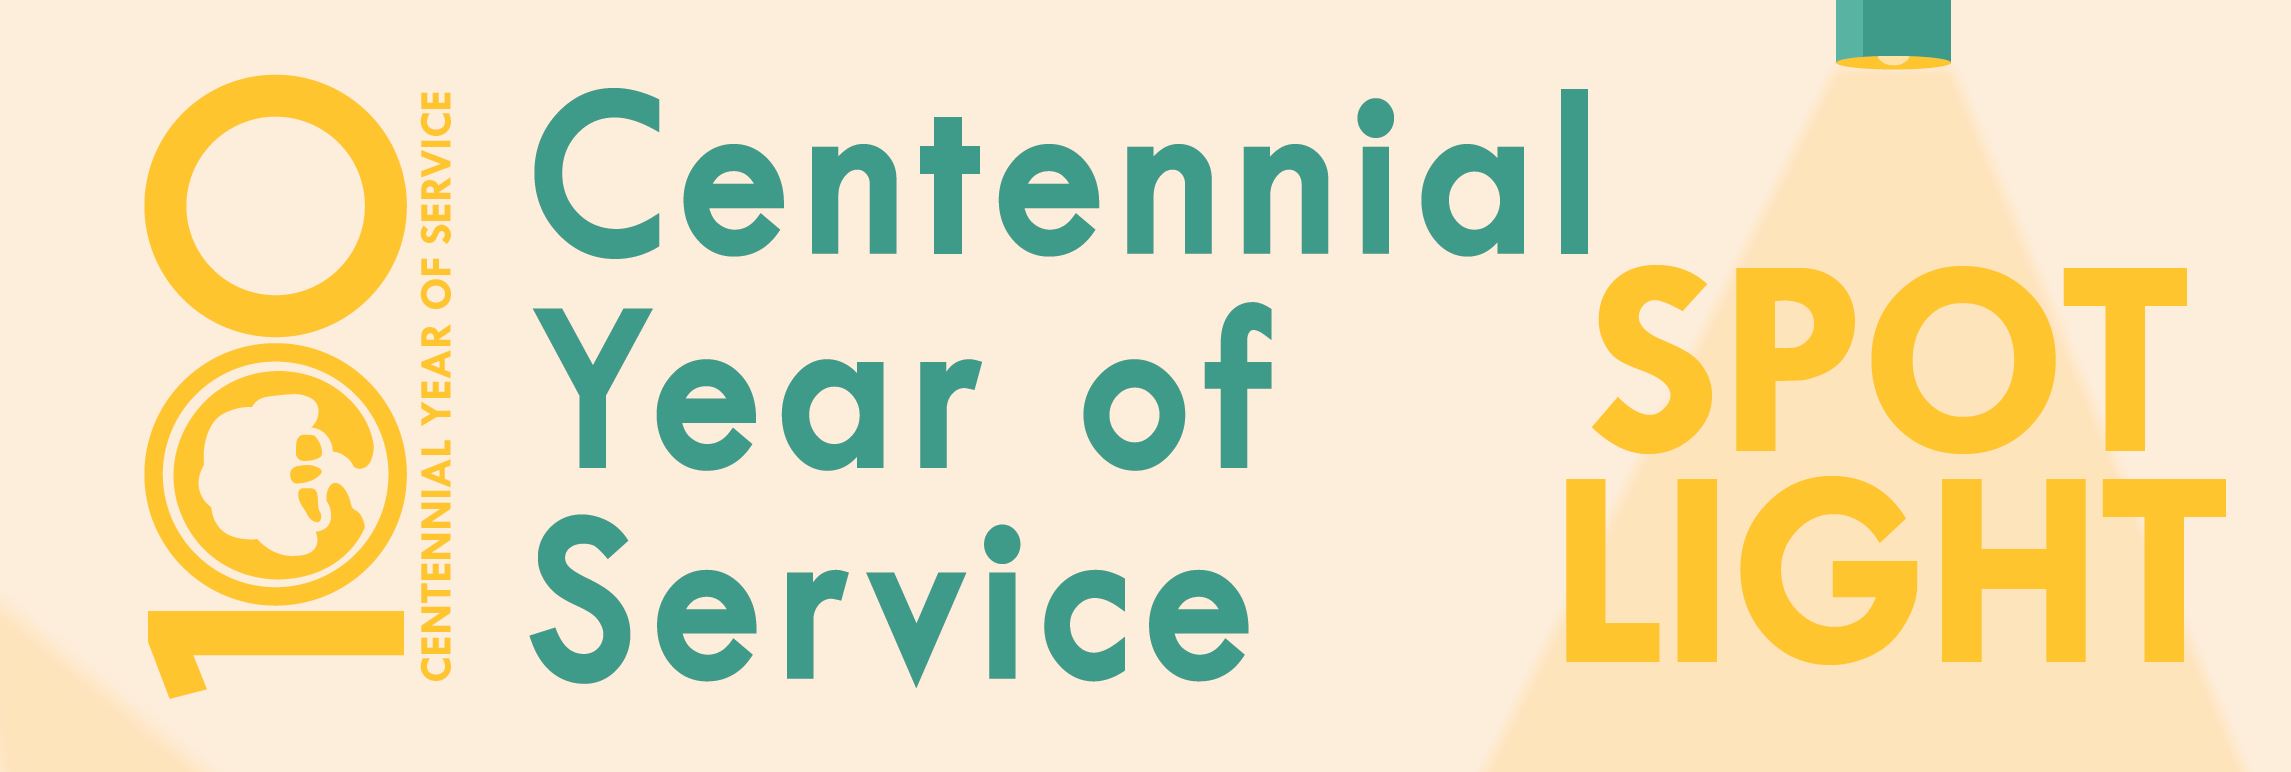 Centennial Year of Service Spot Light